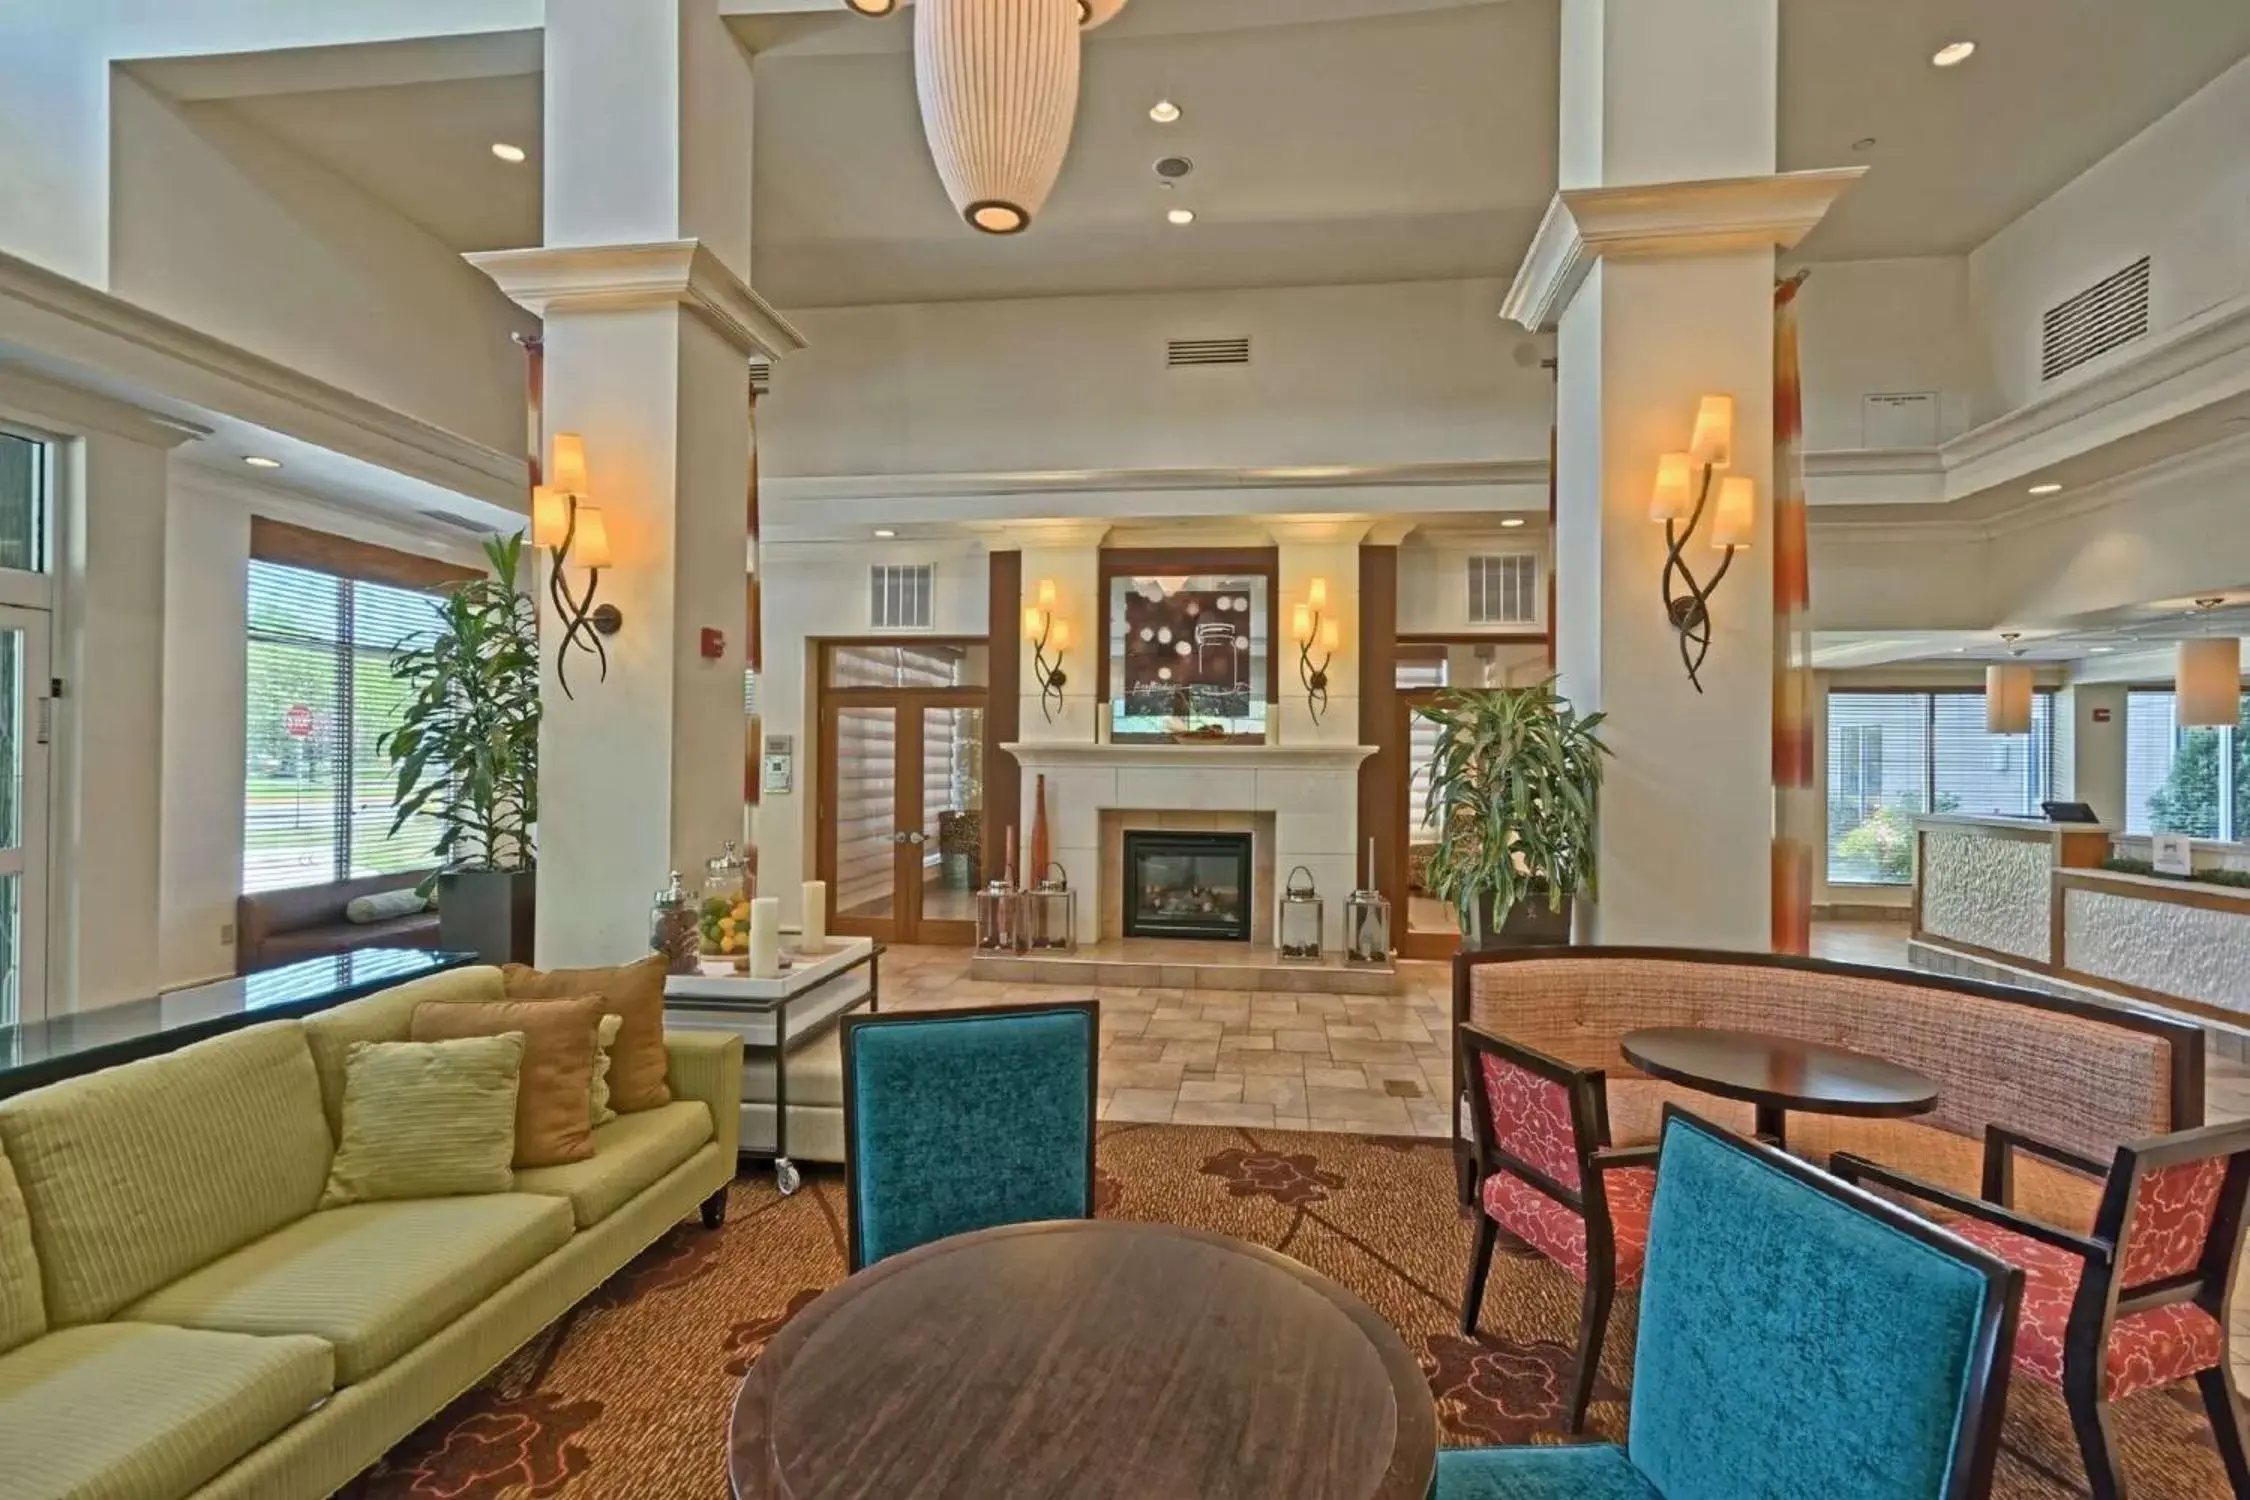 Lobby or reception, Lobby/Reception in Hilton Garden Inn by Hilton Mount Laurel